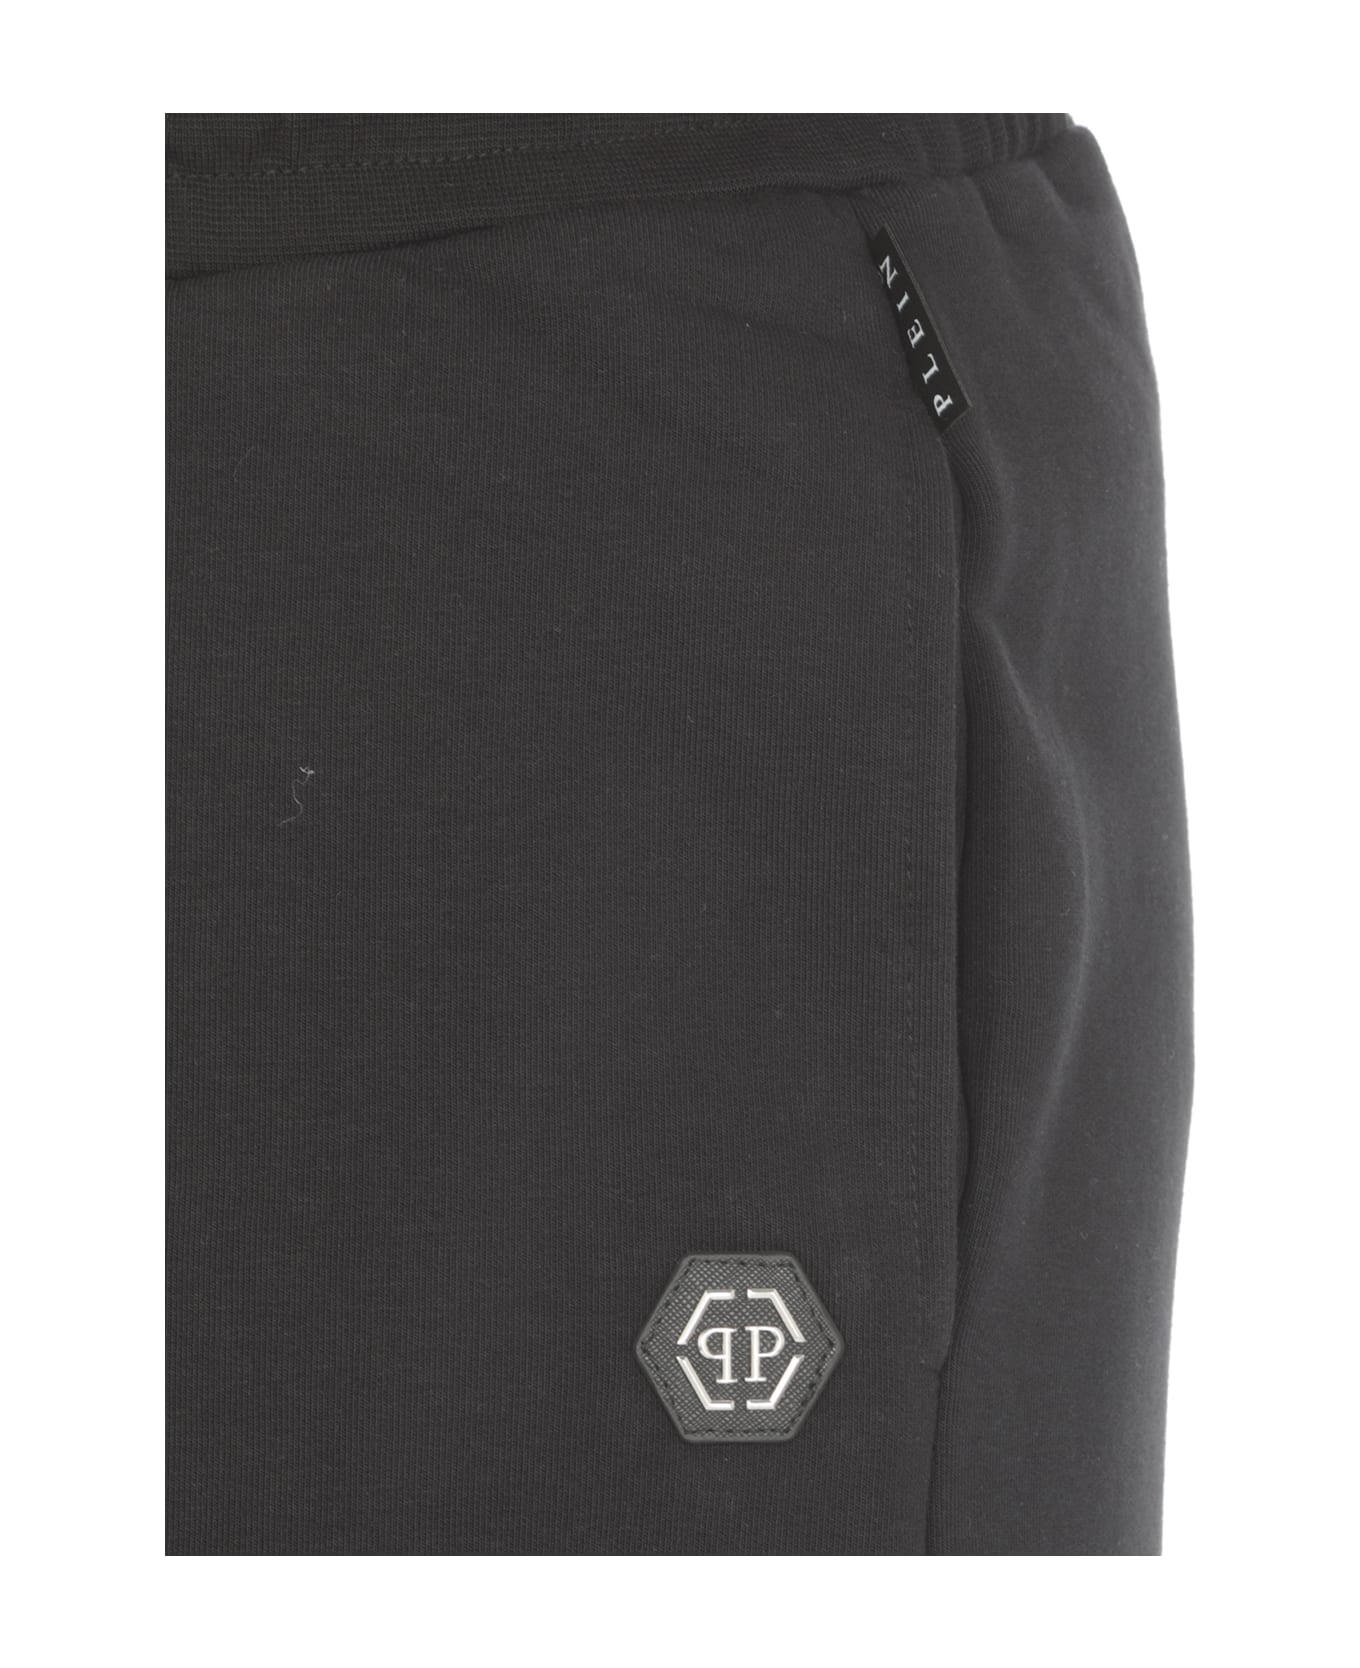 Philipp Plein Hexagon Bermuda Shorts - Black ショートパンツ